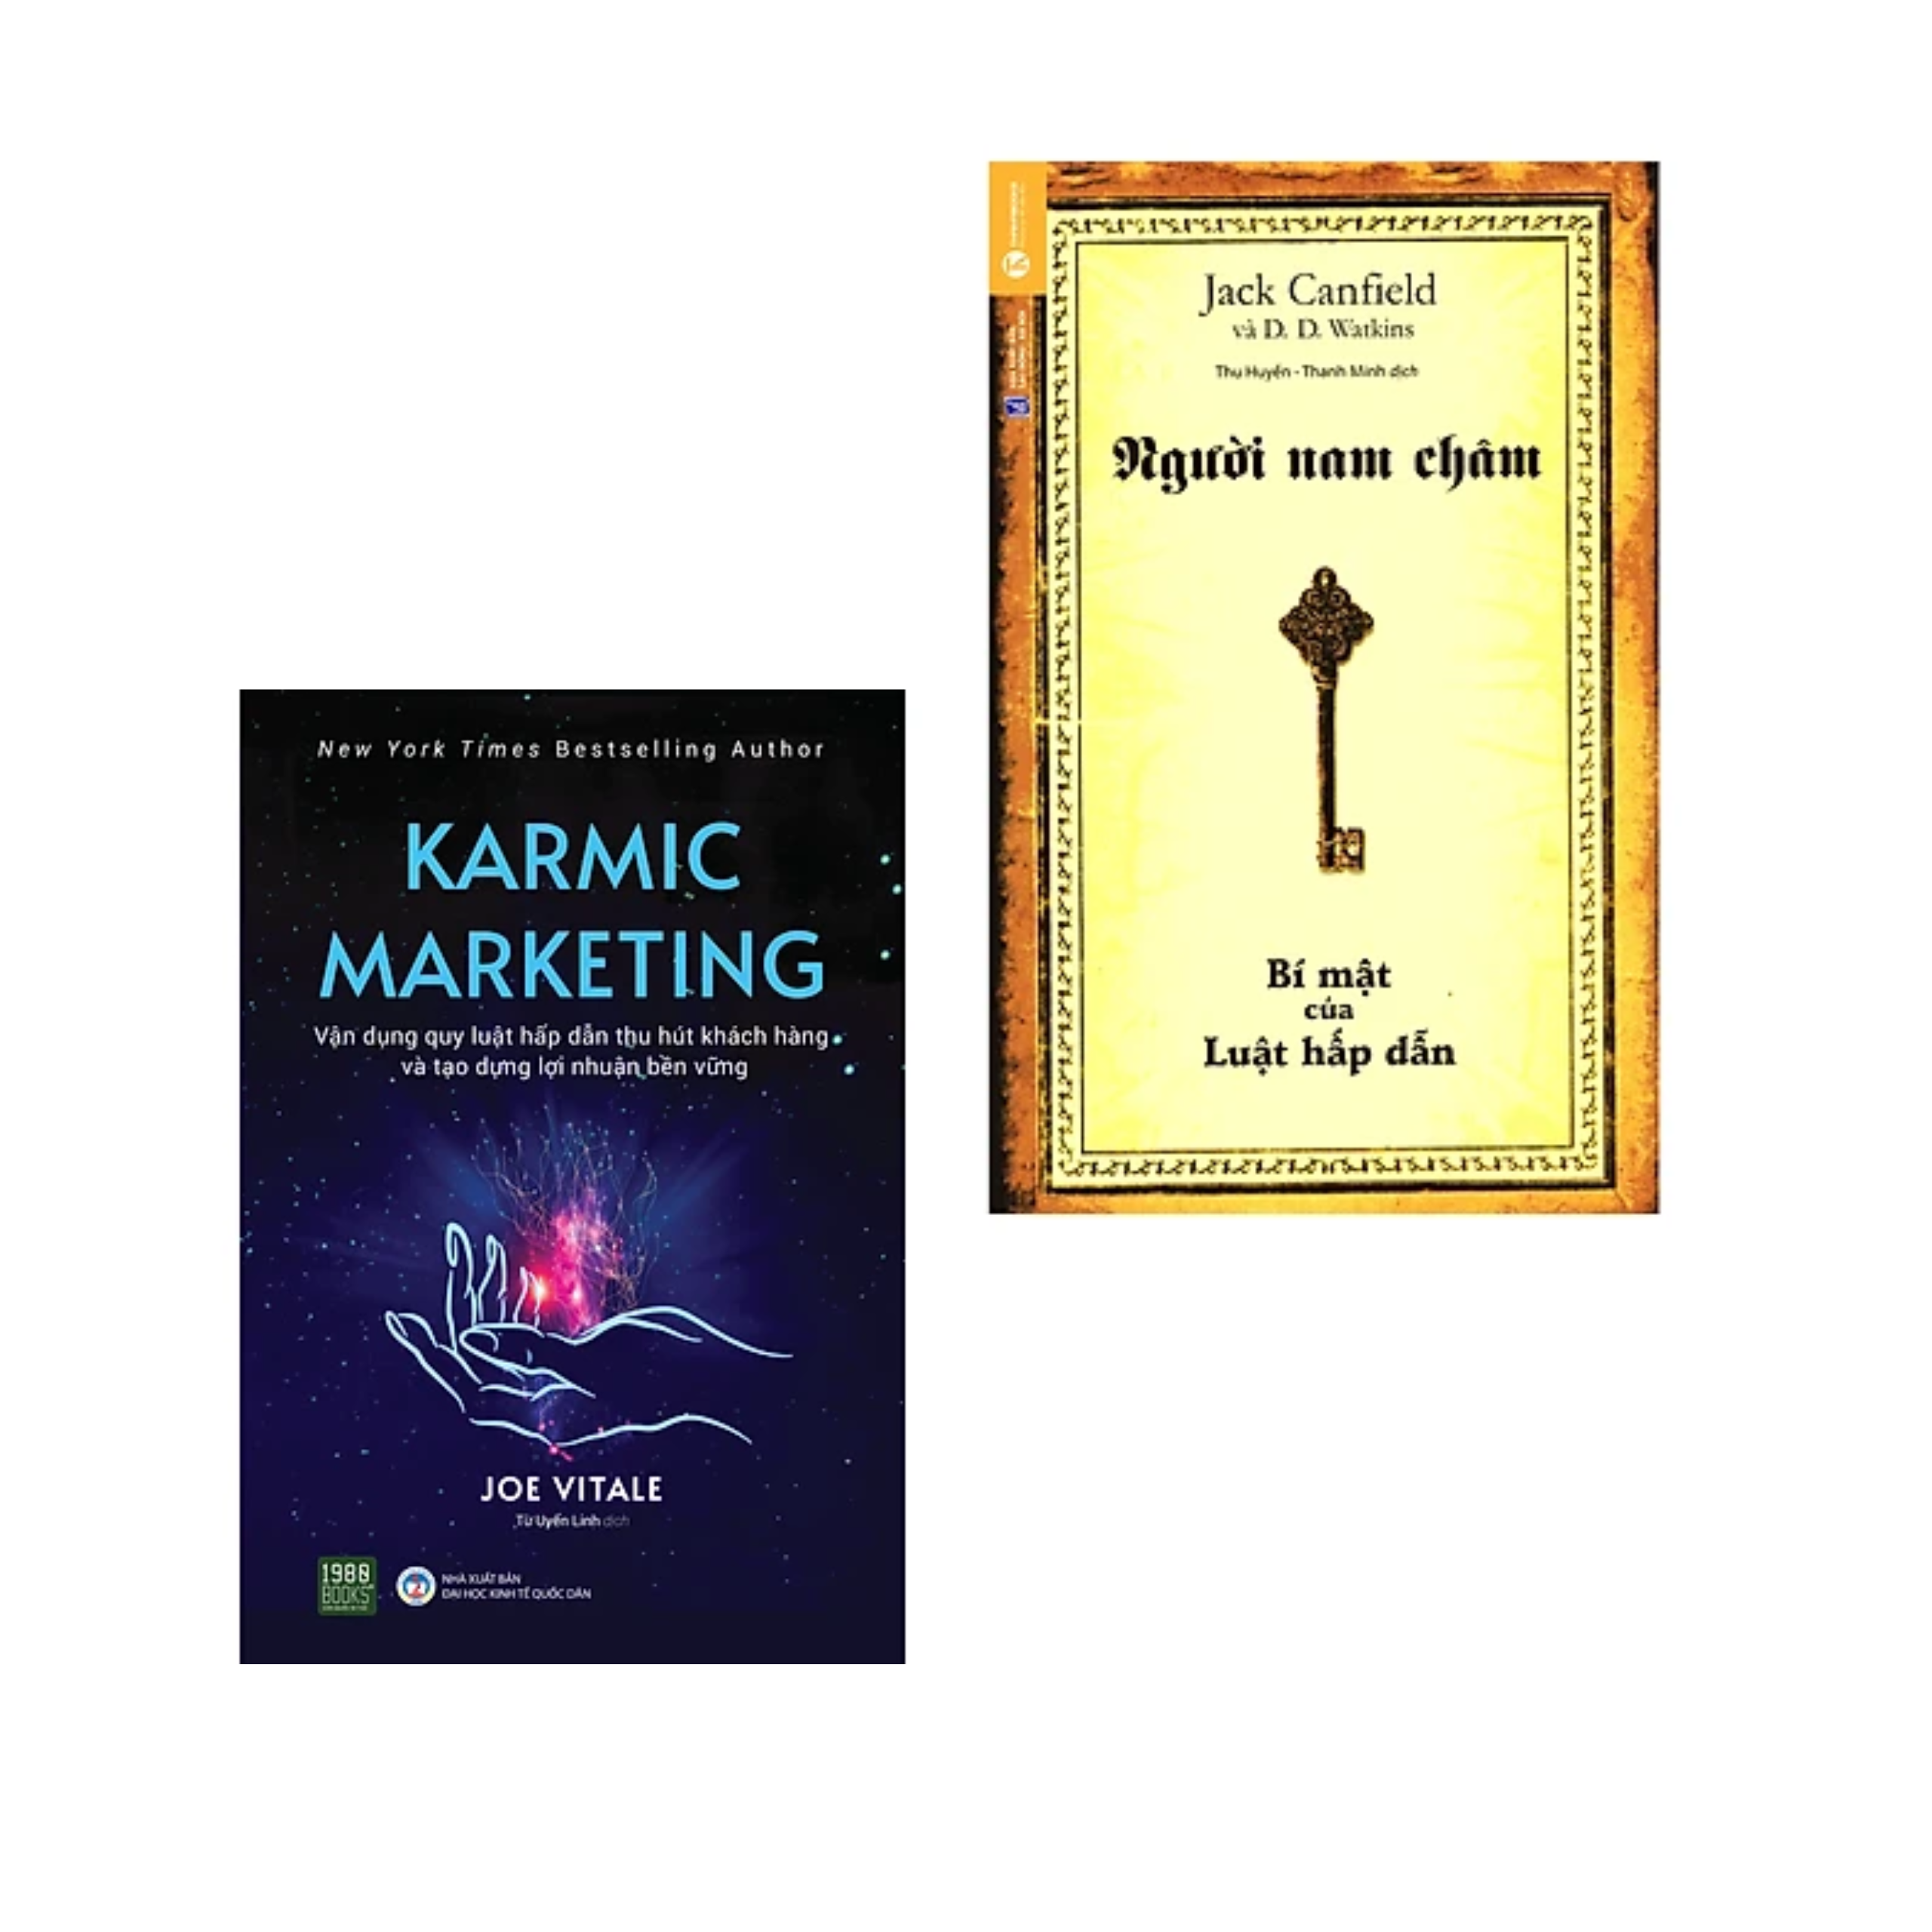 Combo 2Q Sách Marketing - Bán Hàng : Karmic Marketing  - Vận Dụng Quy Luật Hấp Dẫn Thu Hút Khách Hàng Và Tạo Dựng Lợi Nhuận Bền Vững  +  Người Nam Châm - Bí Mật Của Luật Hấp Dẫn (Tái Bản)